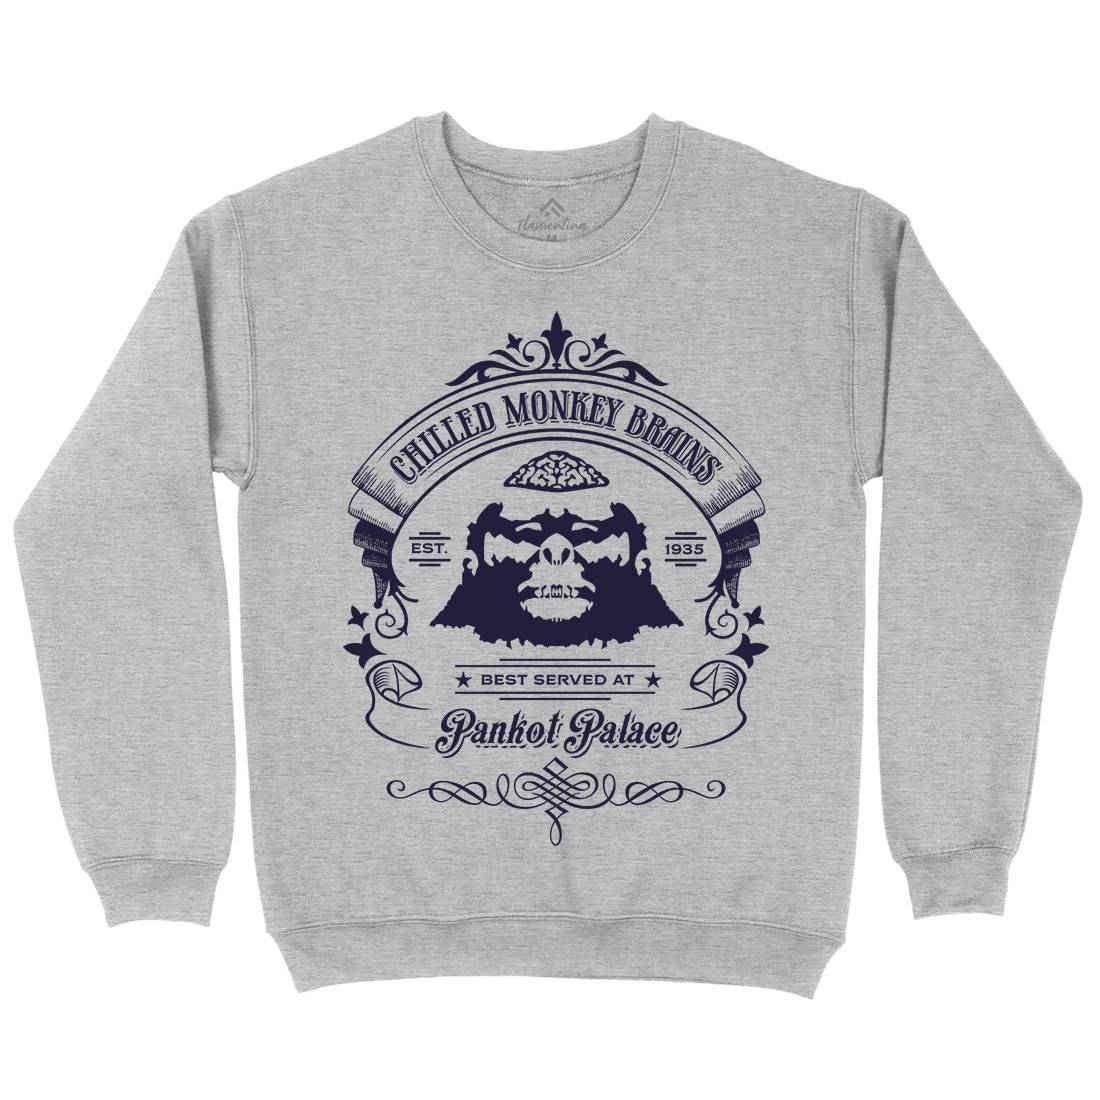 Chilled Monkey Brains Mens Crew Neck Sweatshirt Food D239